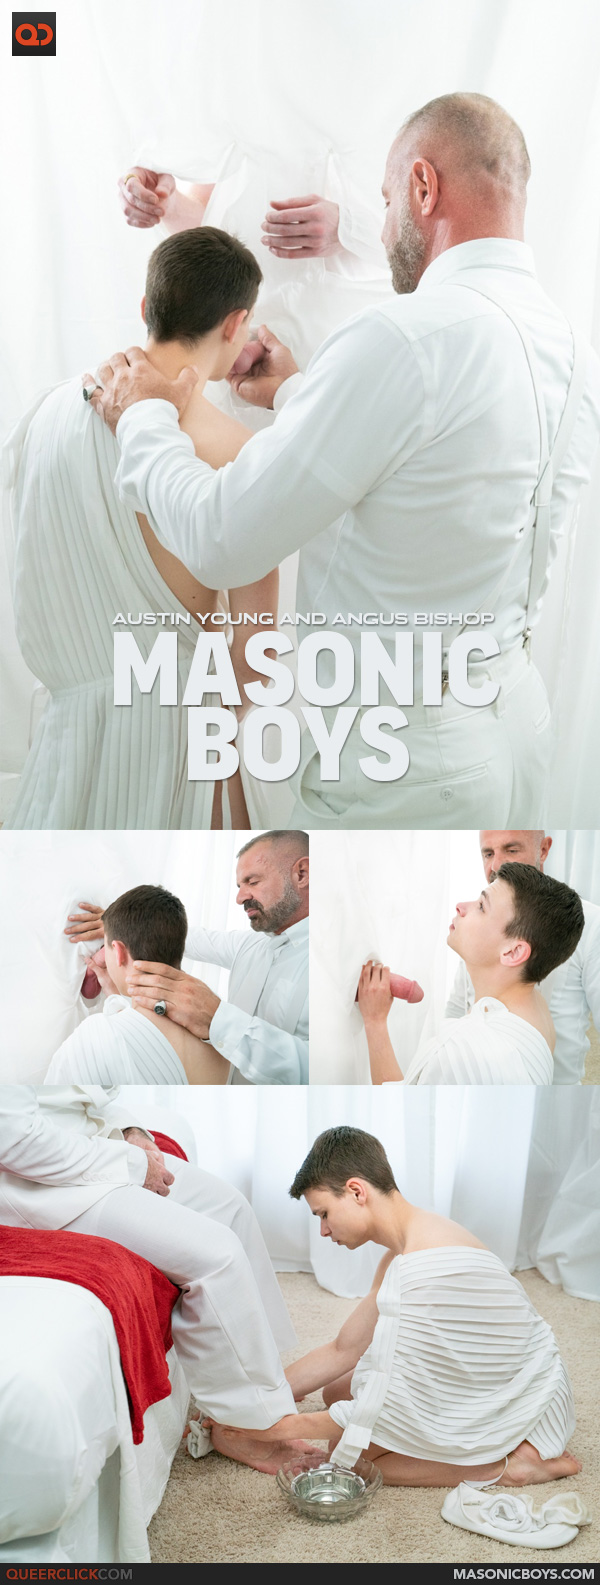 Carnal+ | Masonic Boys: Austin Young and Angus Bishop